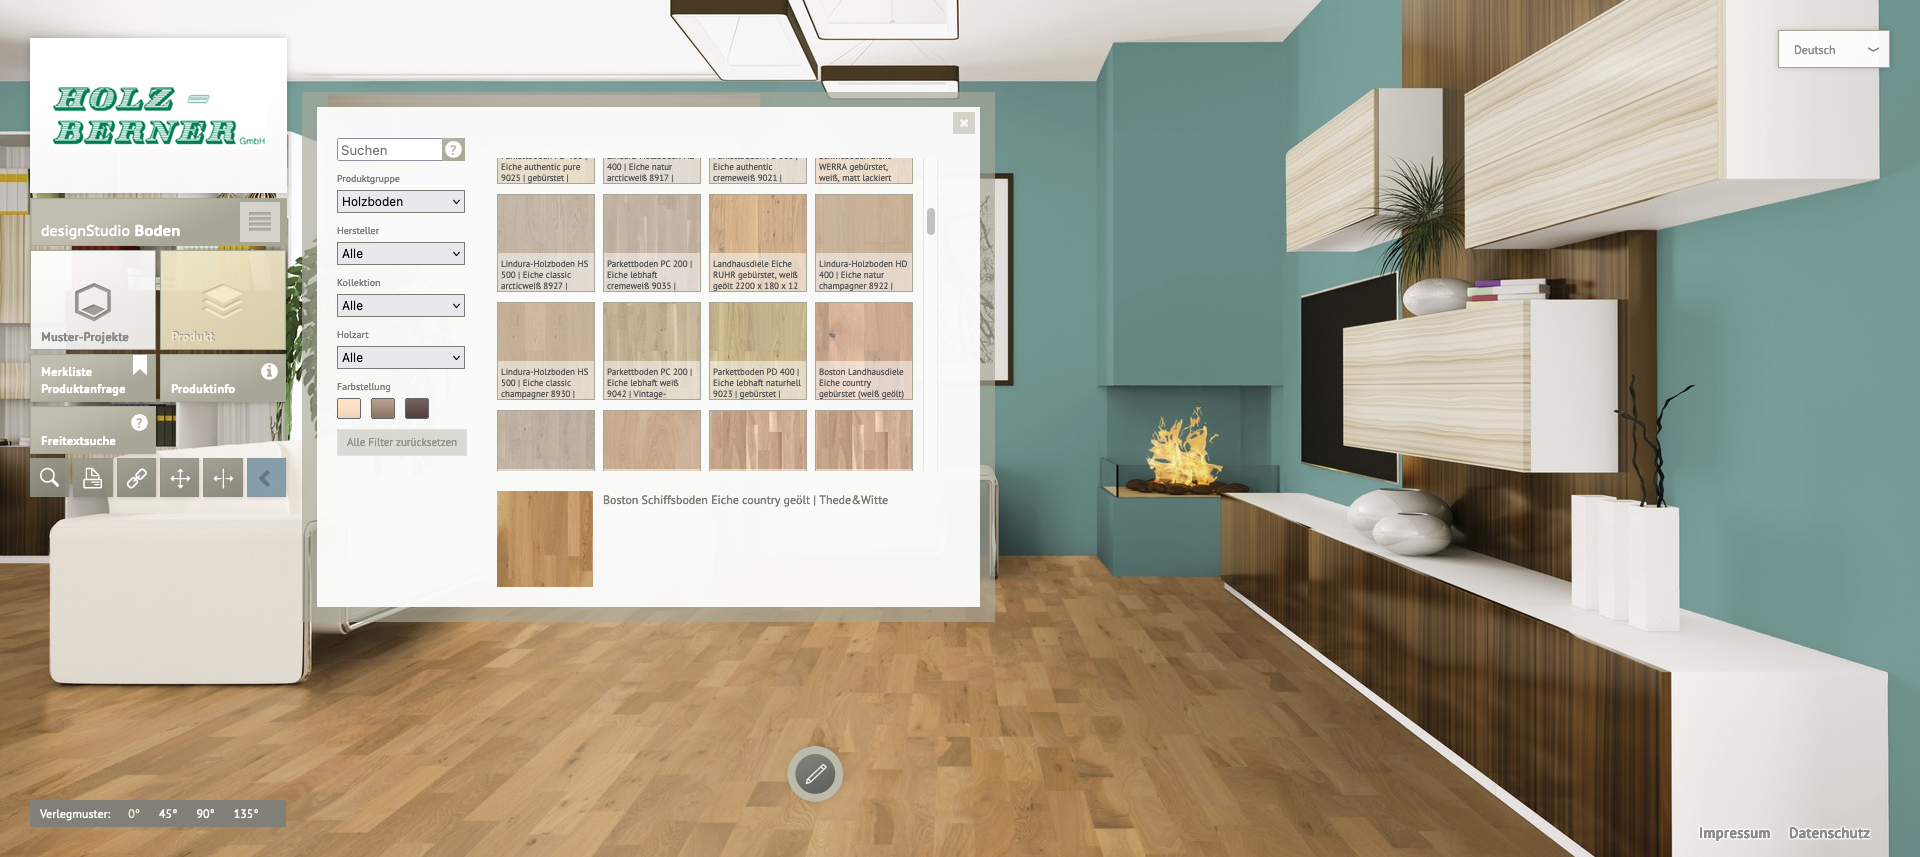 Interaktiver Bodenplaner in einer modernen Raumumgebung mit Auswahl an Holzböden. Holz-Berner's innovative Raumvisualisierung ermöglicht das virtuelle Ausprobieren verschiedener Bodenbeläge.